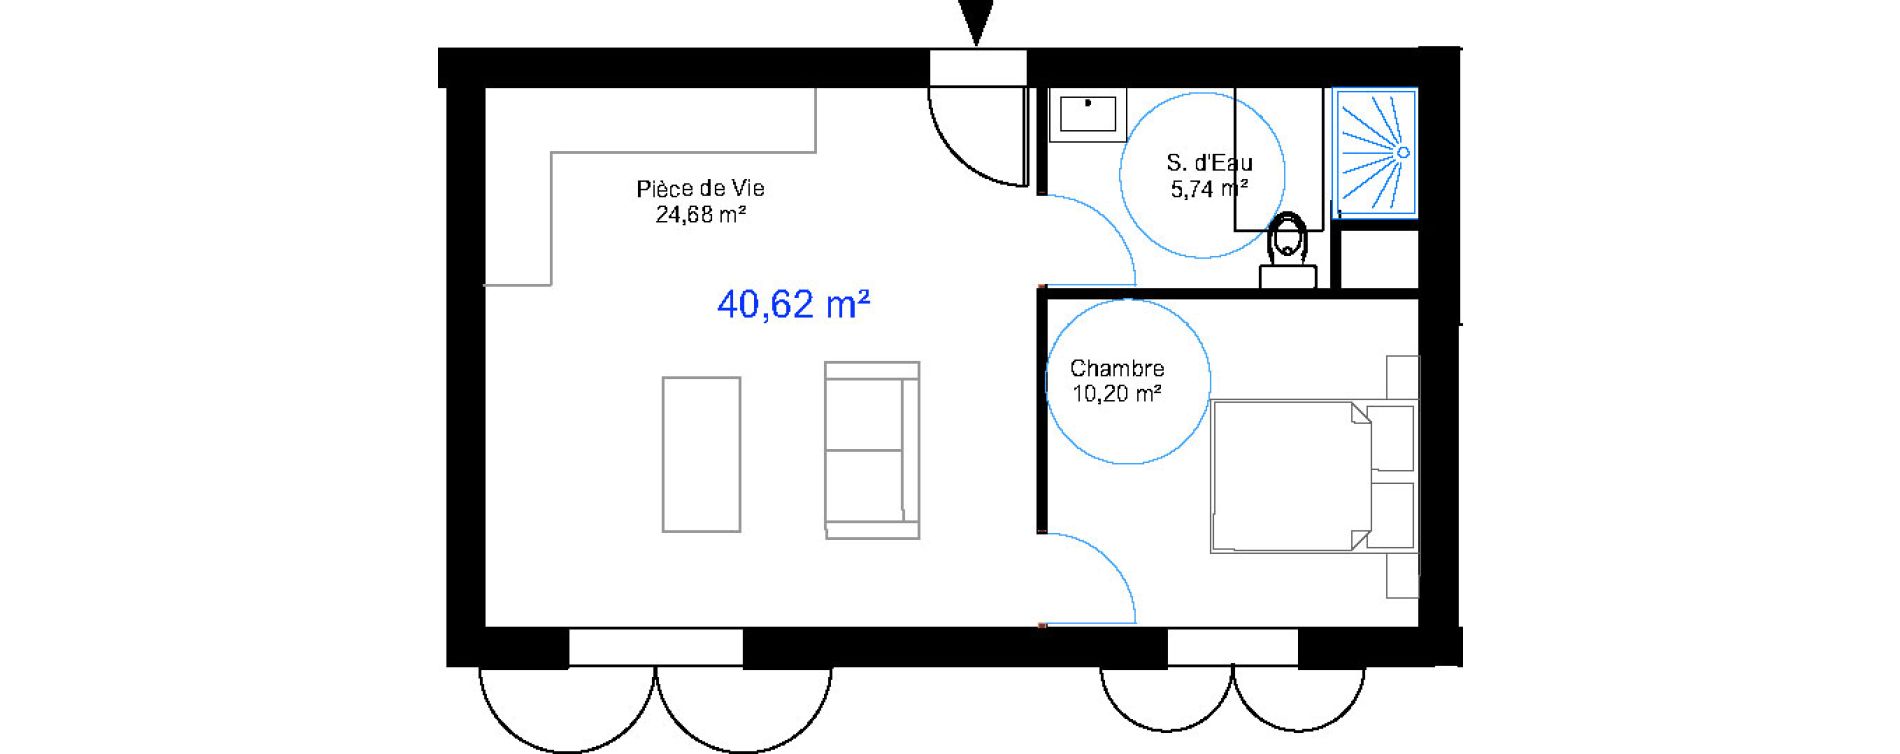 Appartement T2 de 40,62 m2 aux Sables-D'Olonne Le chateau d olonne